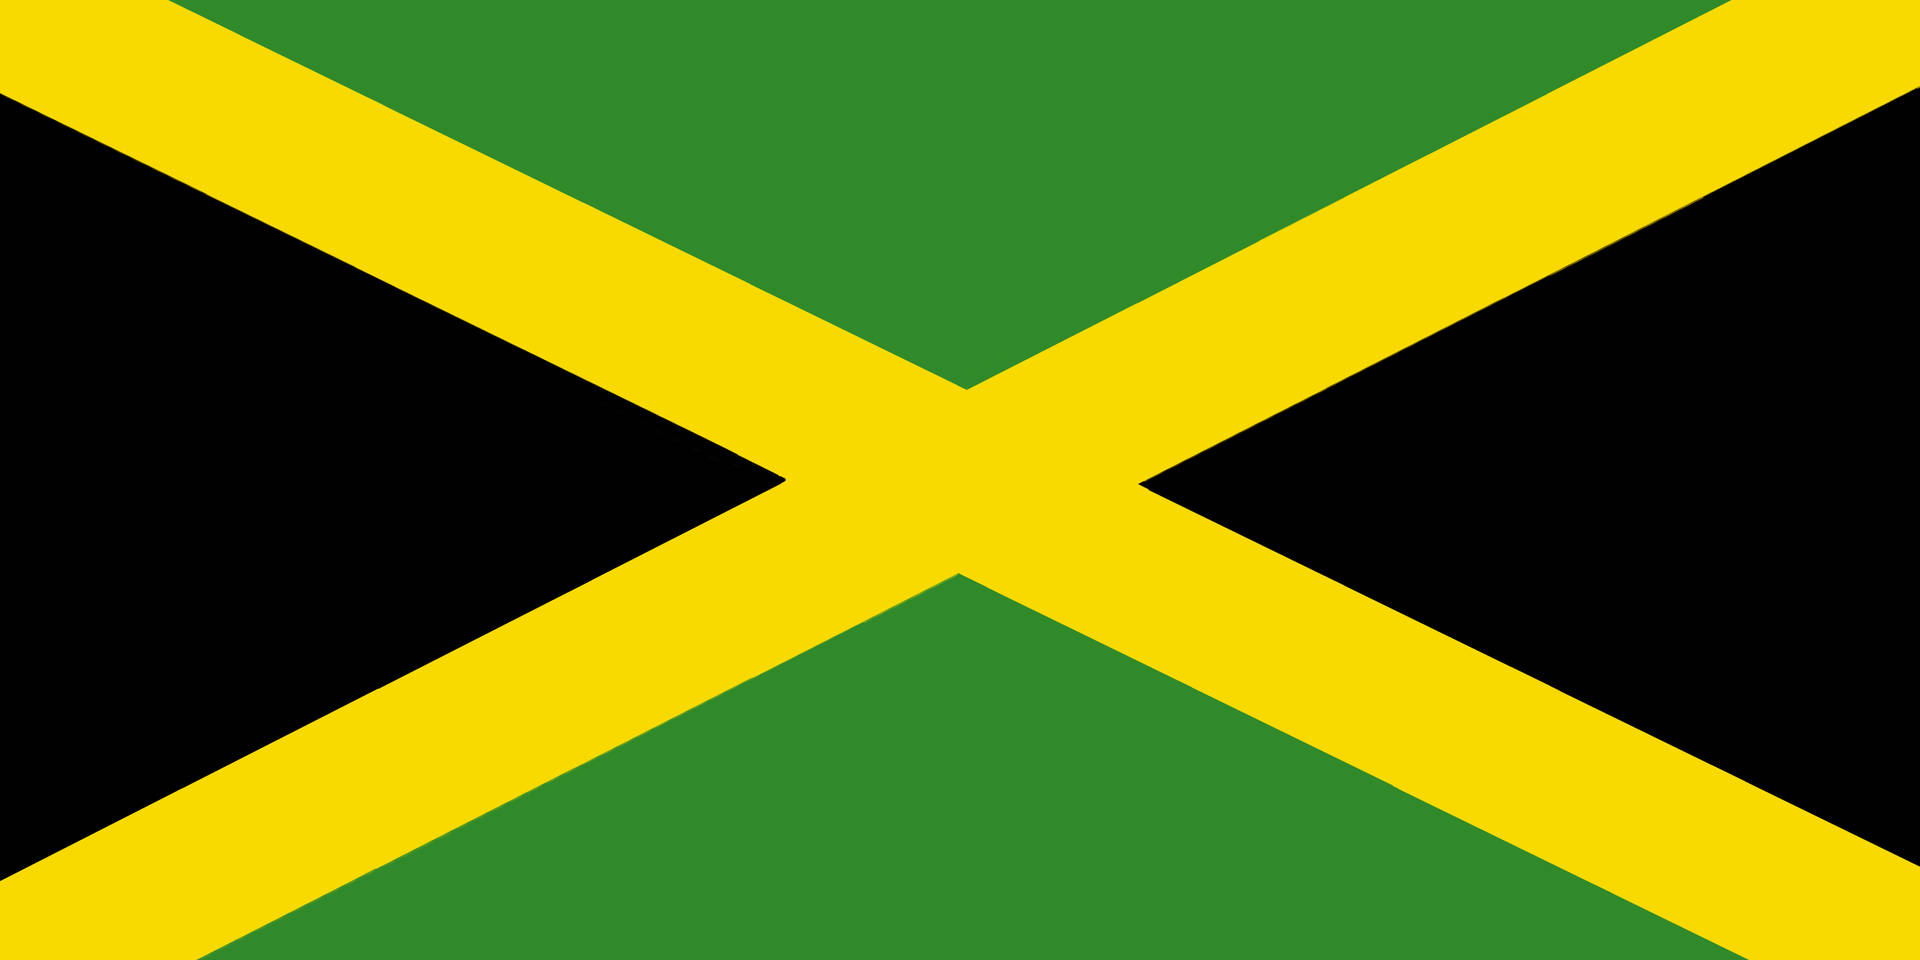 Tapetet Nationalflag af Jamaica: Se det detaljerede og farverige design af Den Jamaicanske Flag Wallpaper